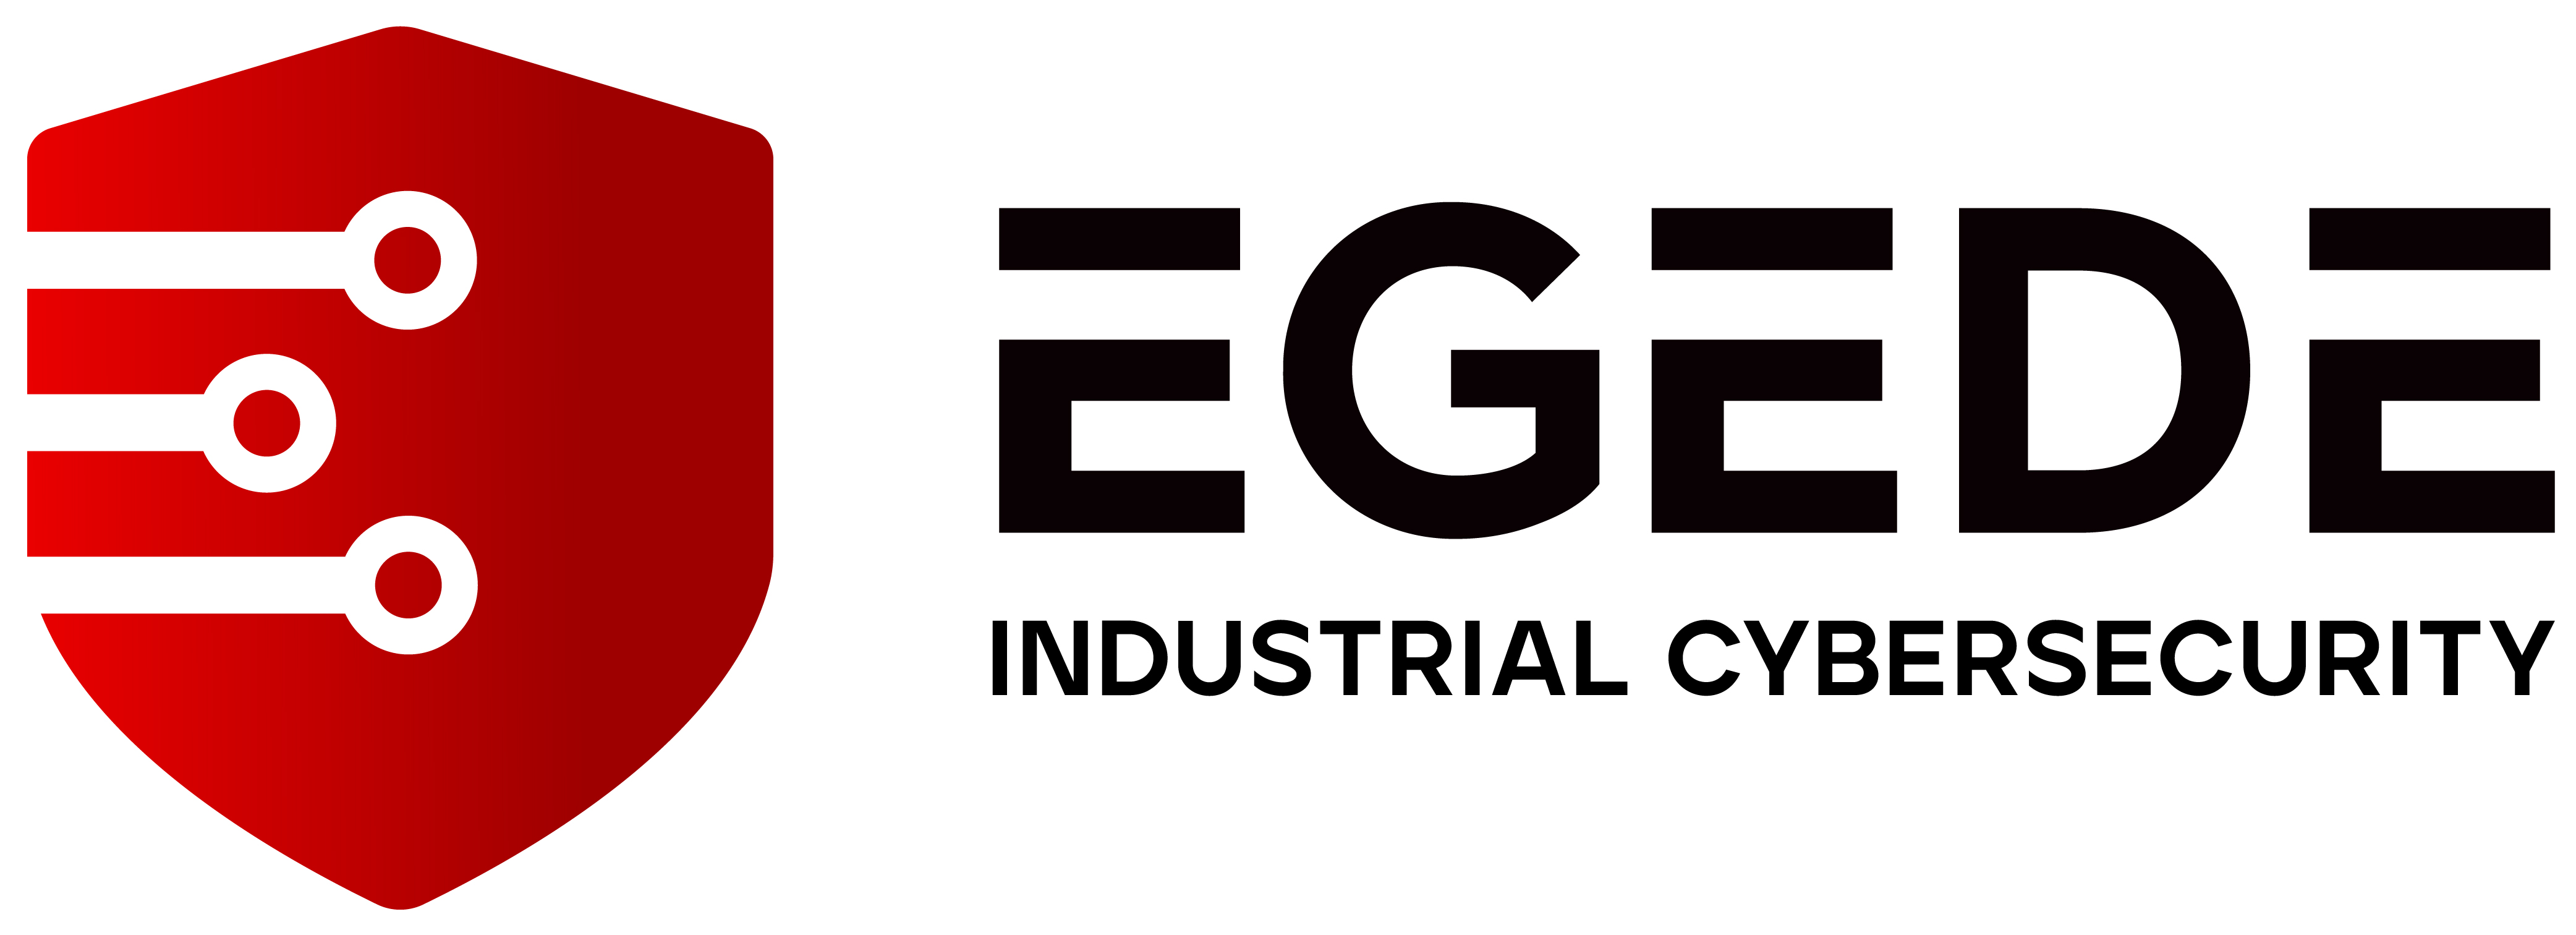 www.egede.co